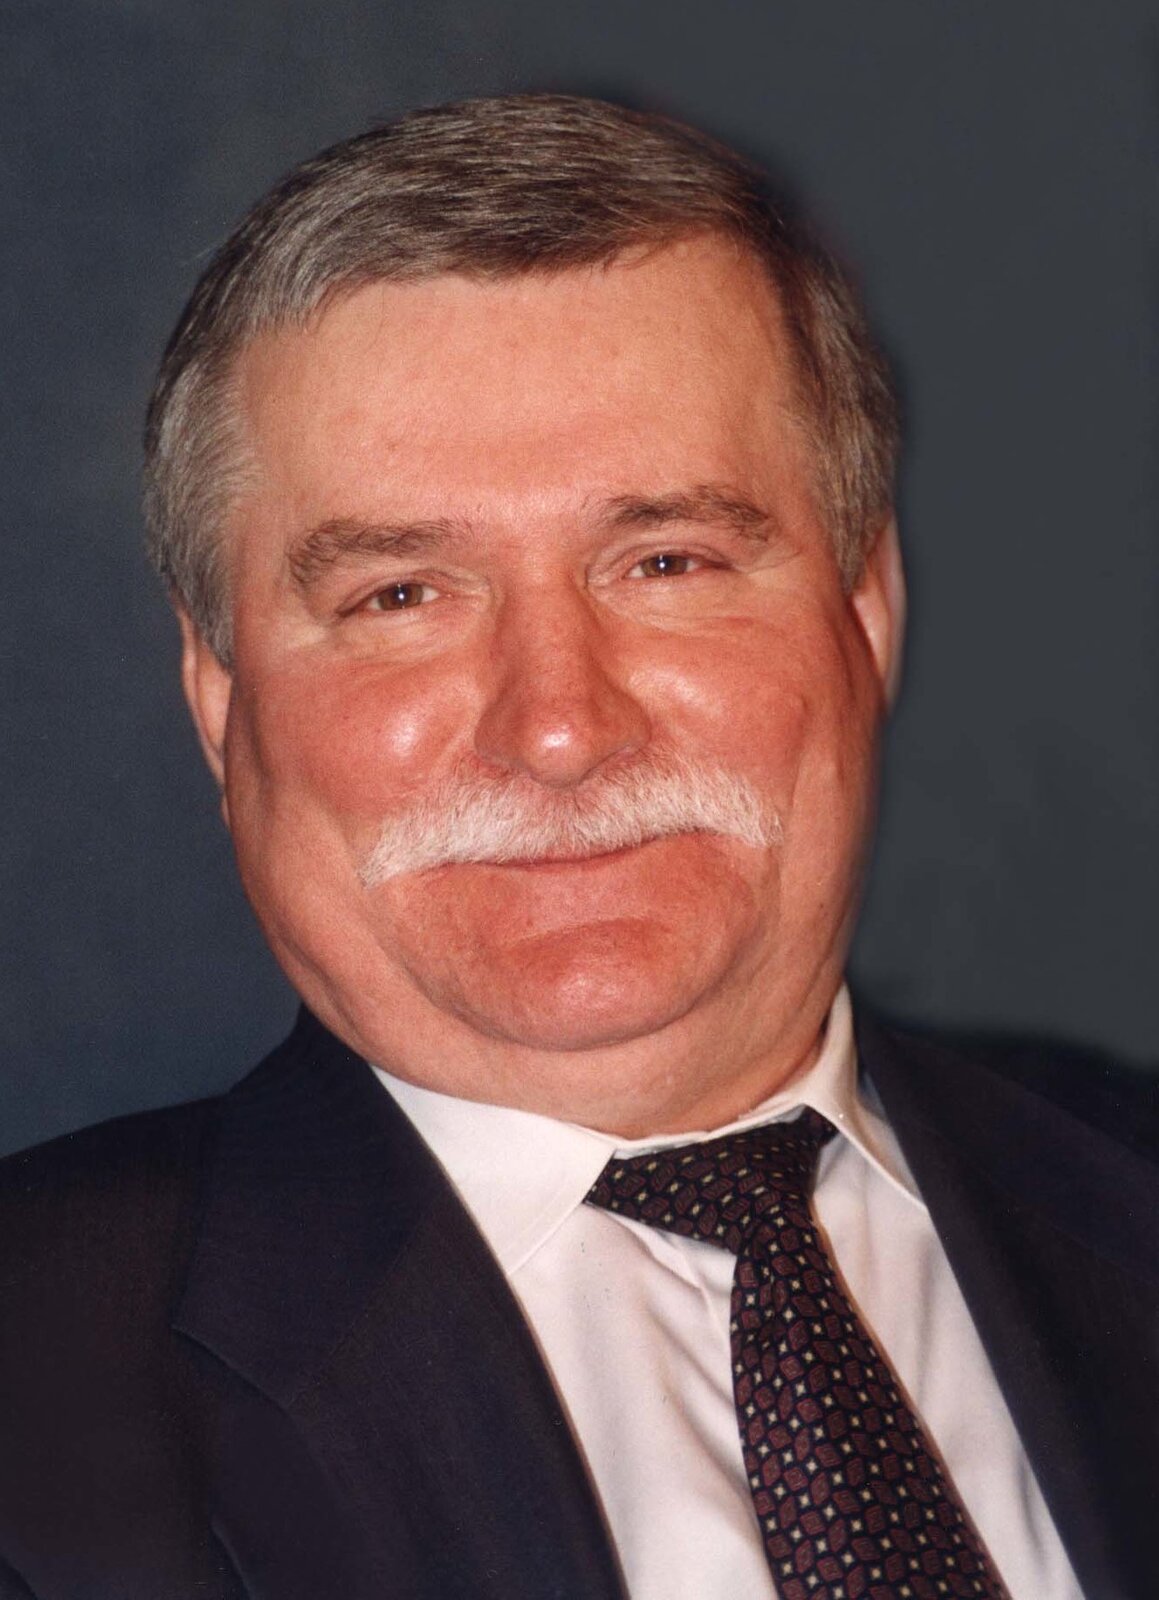 Zdjęcie przedstawia mężczyznę z charakterystycznym wąsem. Jest ubrany w garnitur. To były prezydent Polski Lech Wałęsa. 